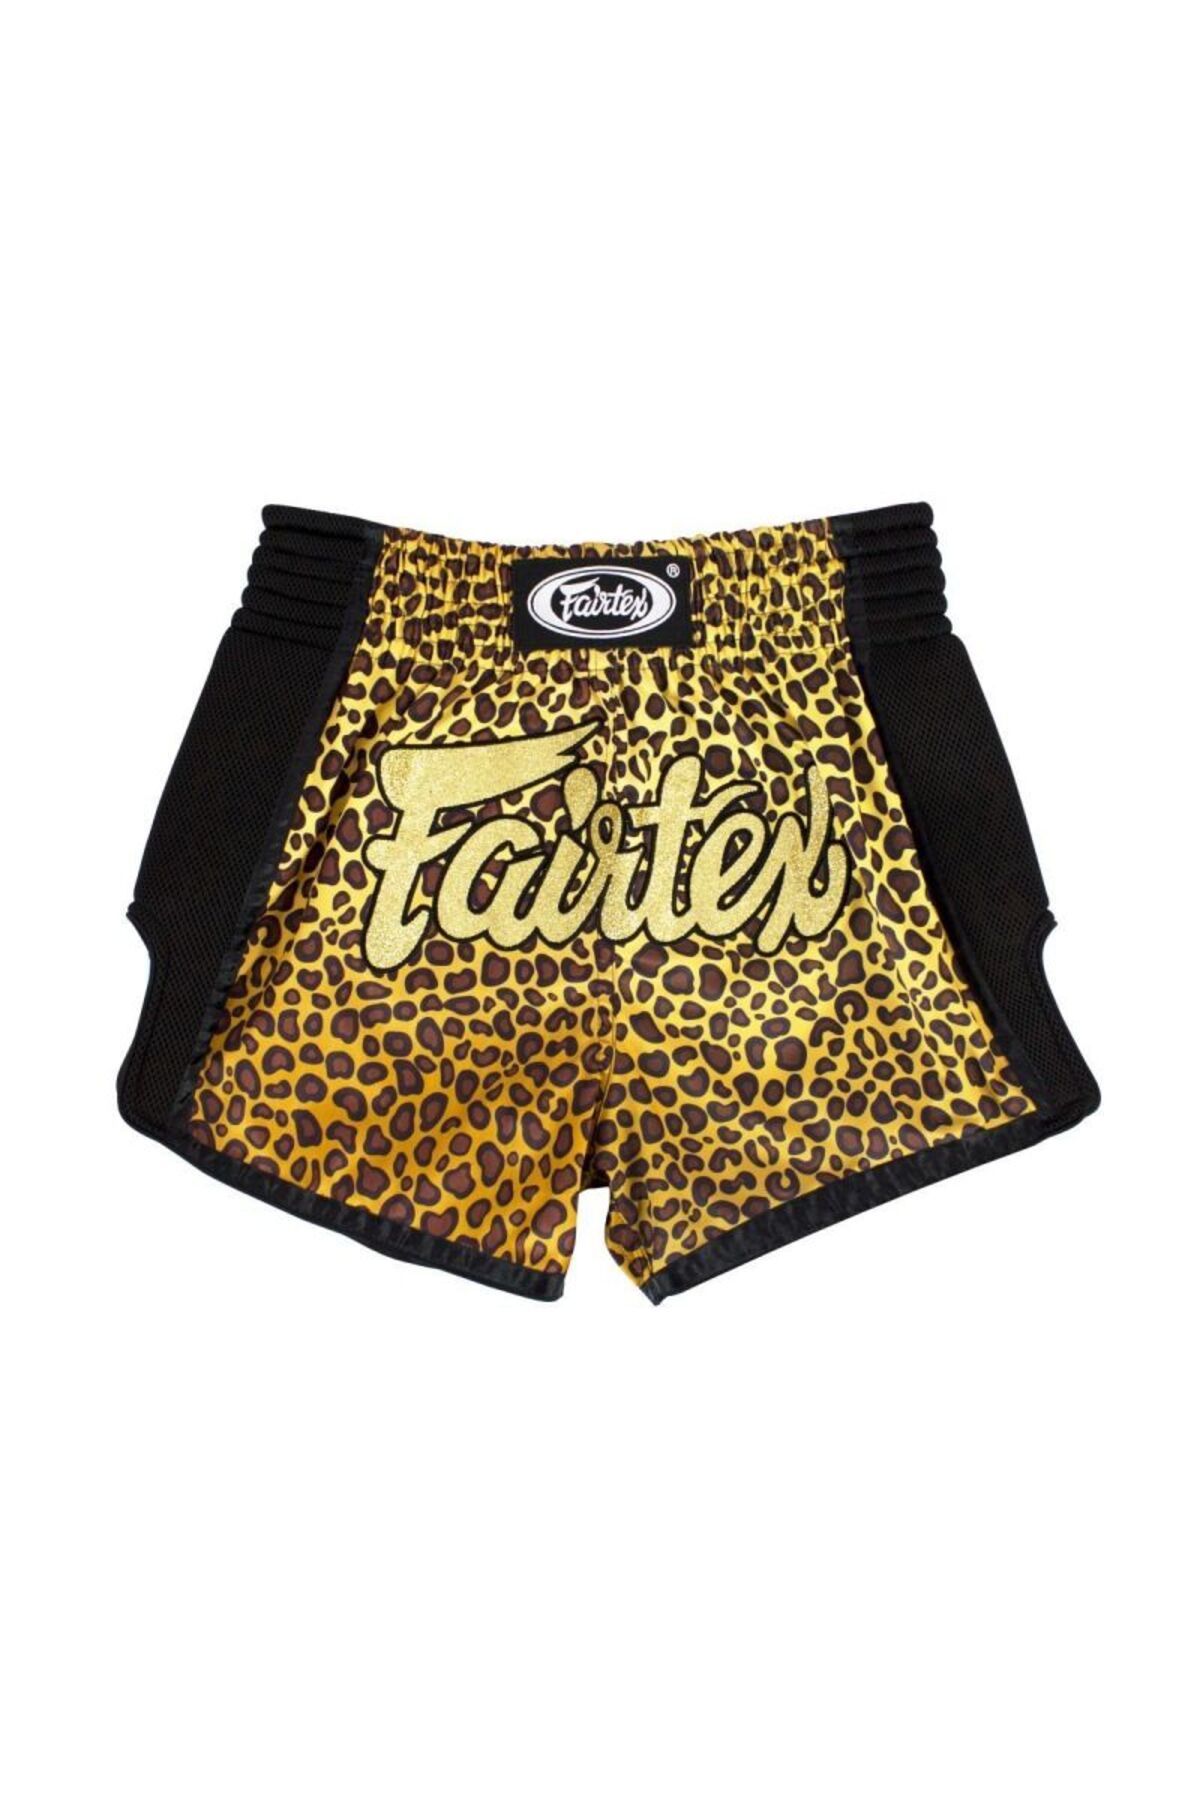 Fairtex muay thai shorts Leopard BS1709